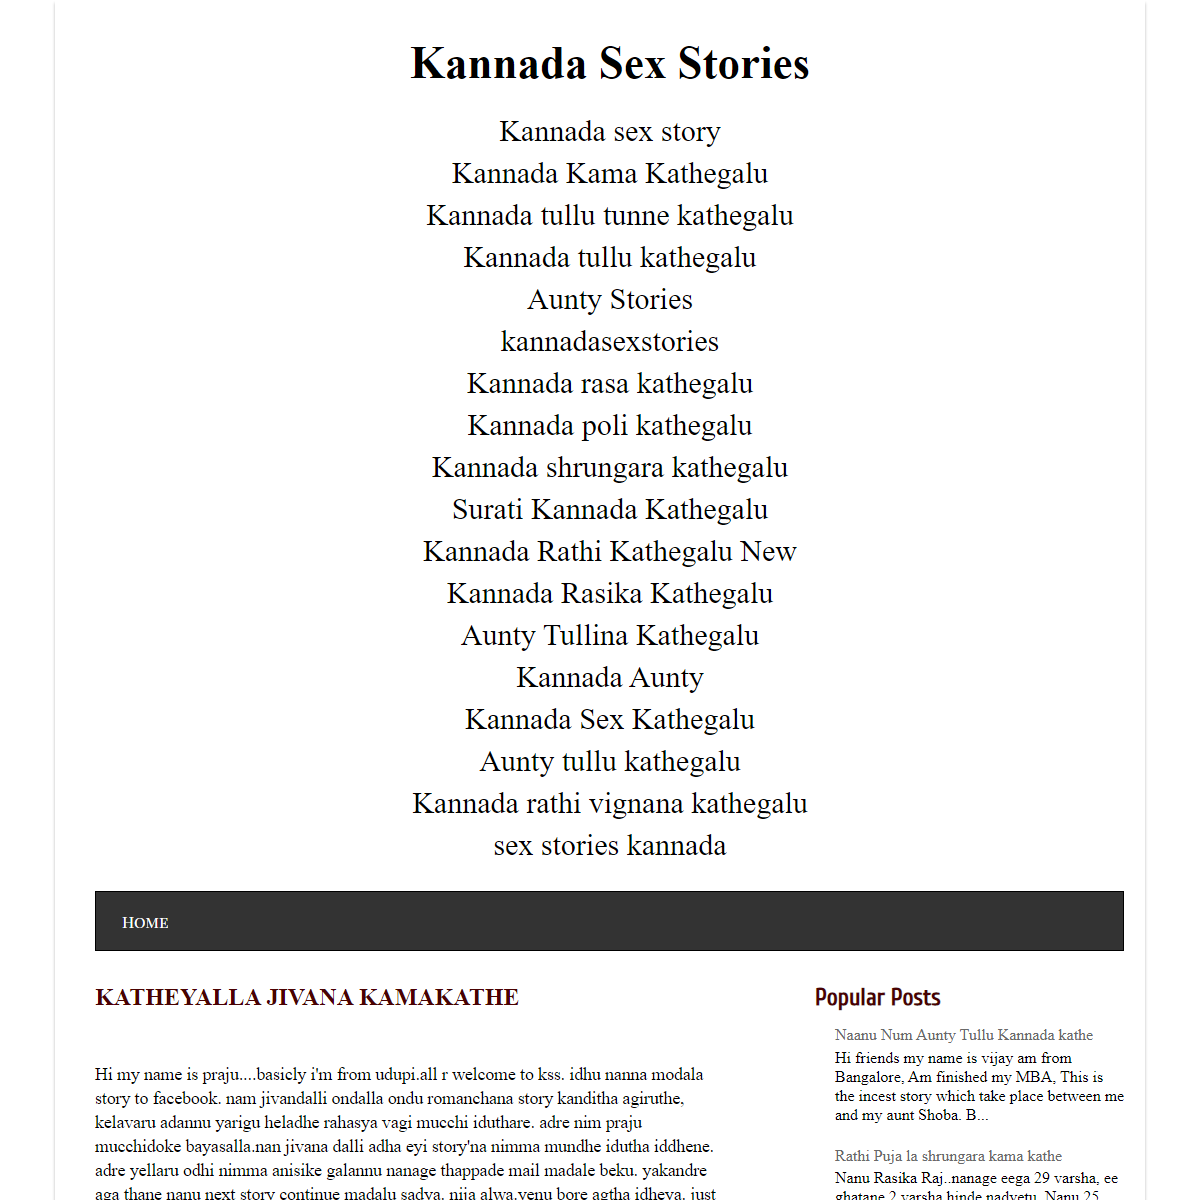 KATHEYALLA JIVANA Kamakathe - Kannada Sex Stories